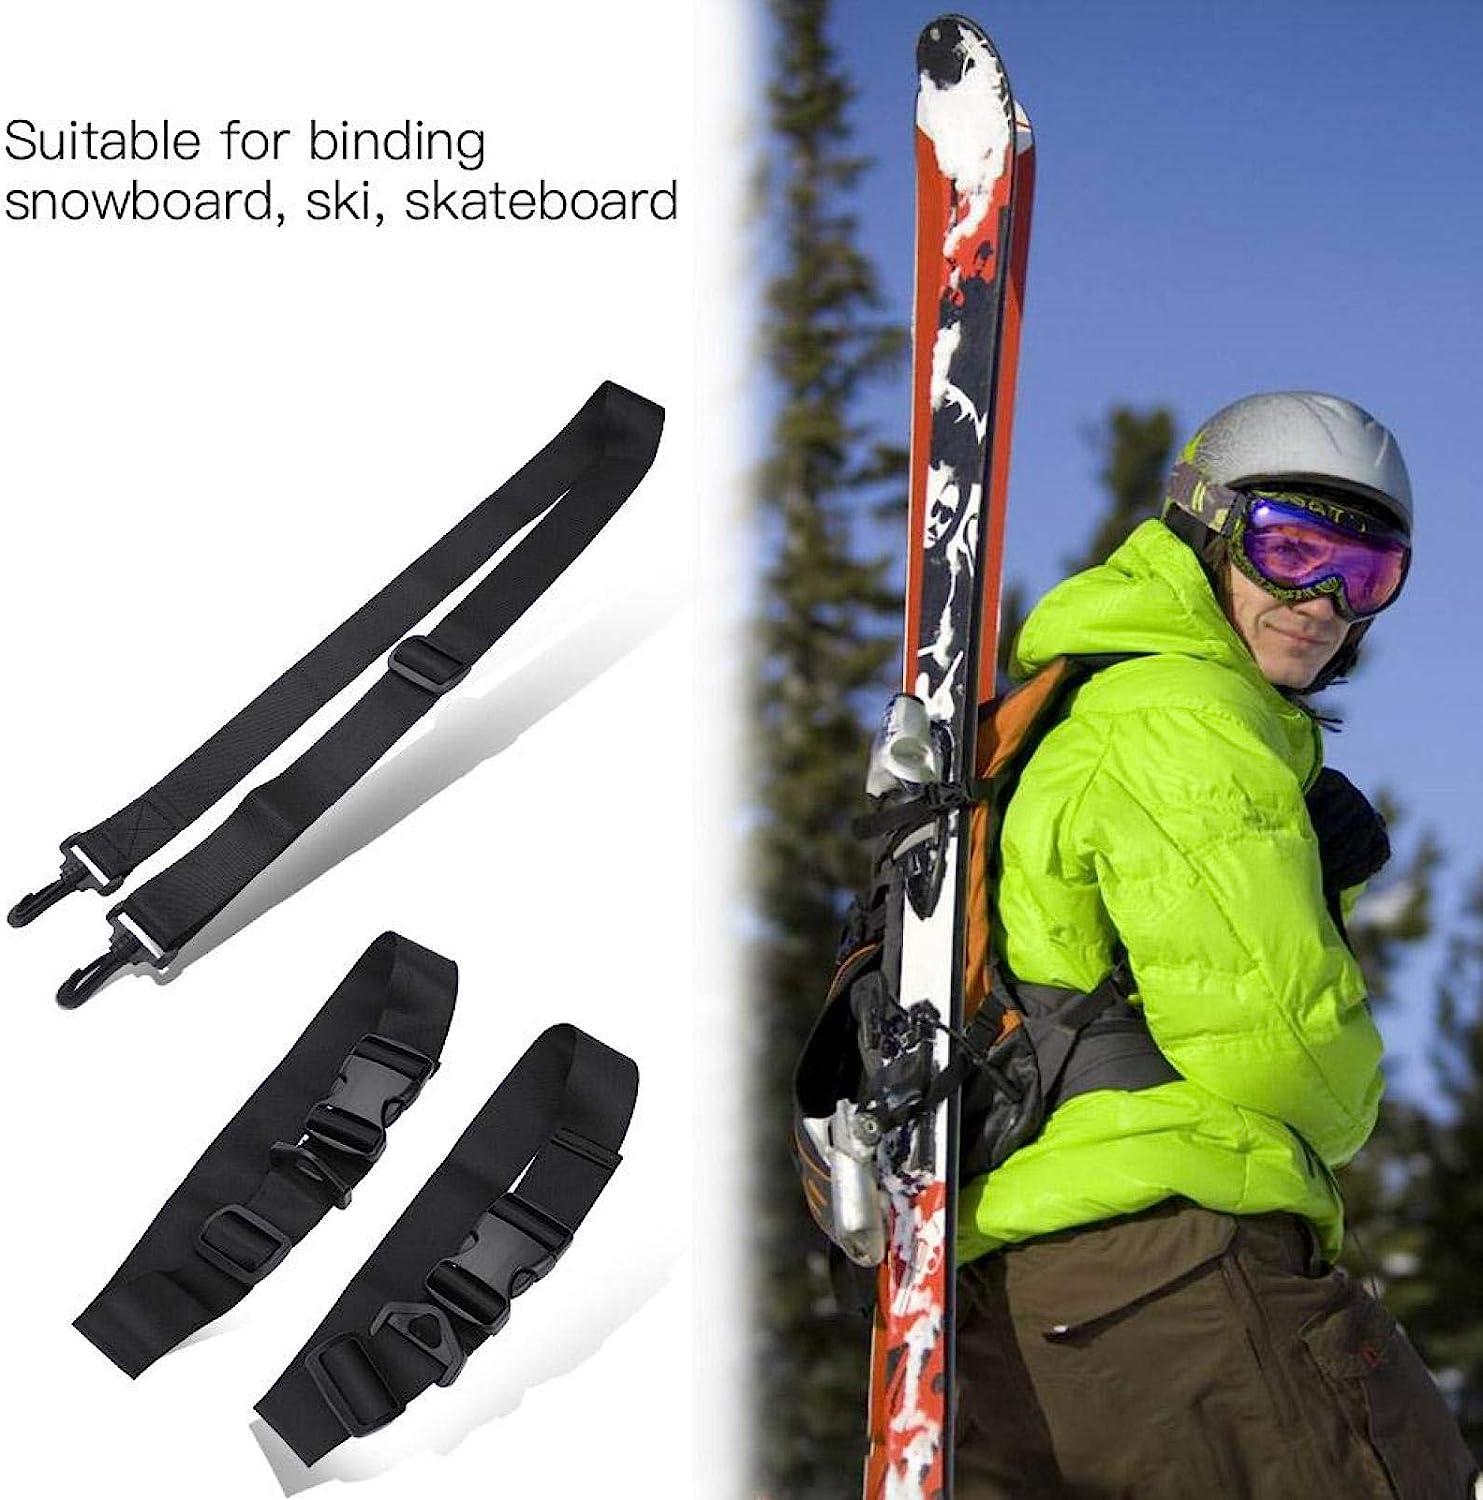 Skimate - Skimate Ski Straps, Ski Straps for Carrying, Ski Carrier Strap,  Ski Carrier Strap, Snowboard Binding Straps, Adjustable Shoulder